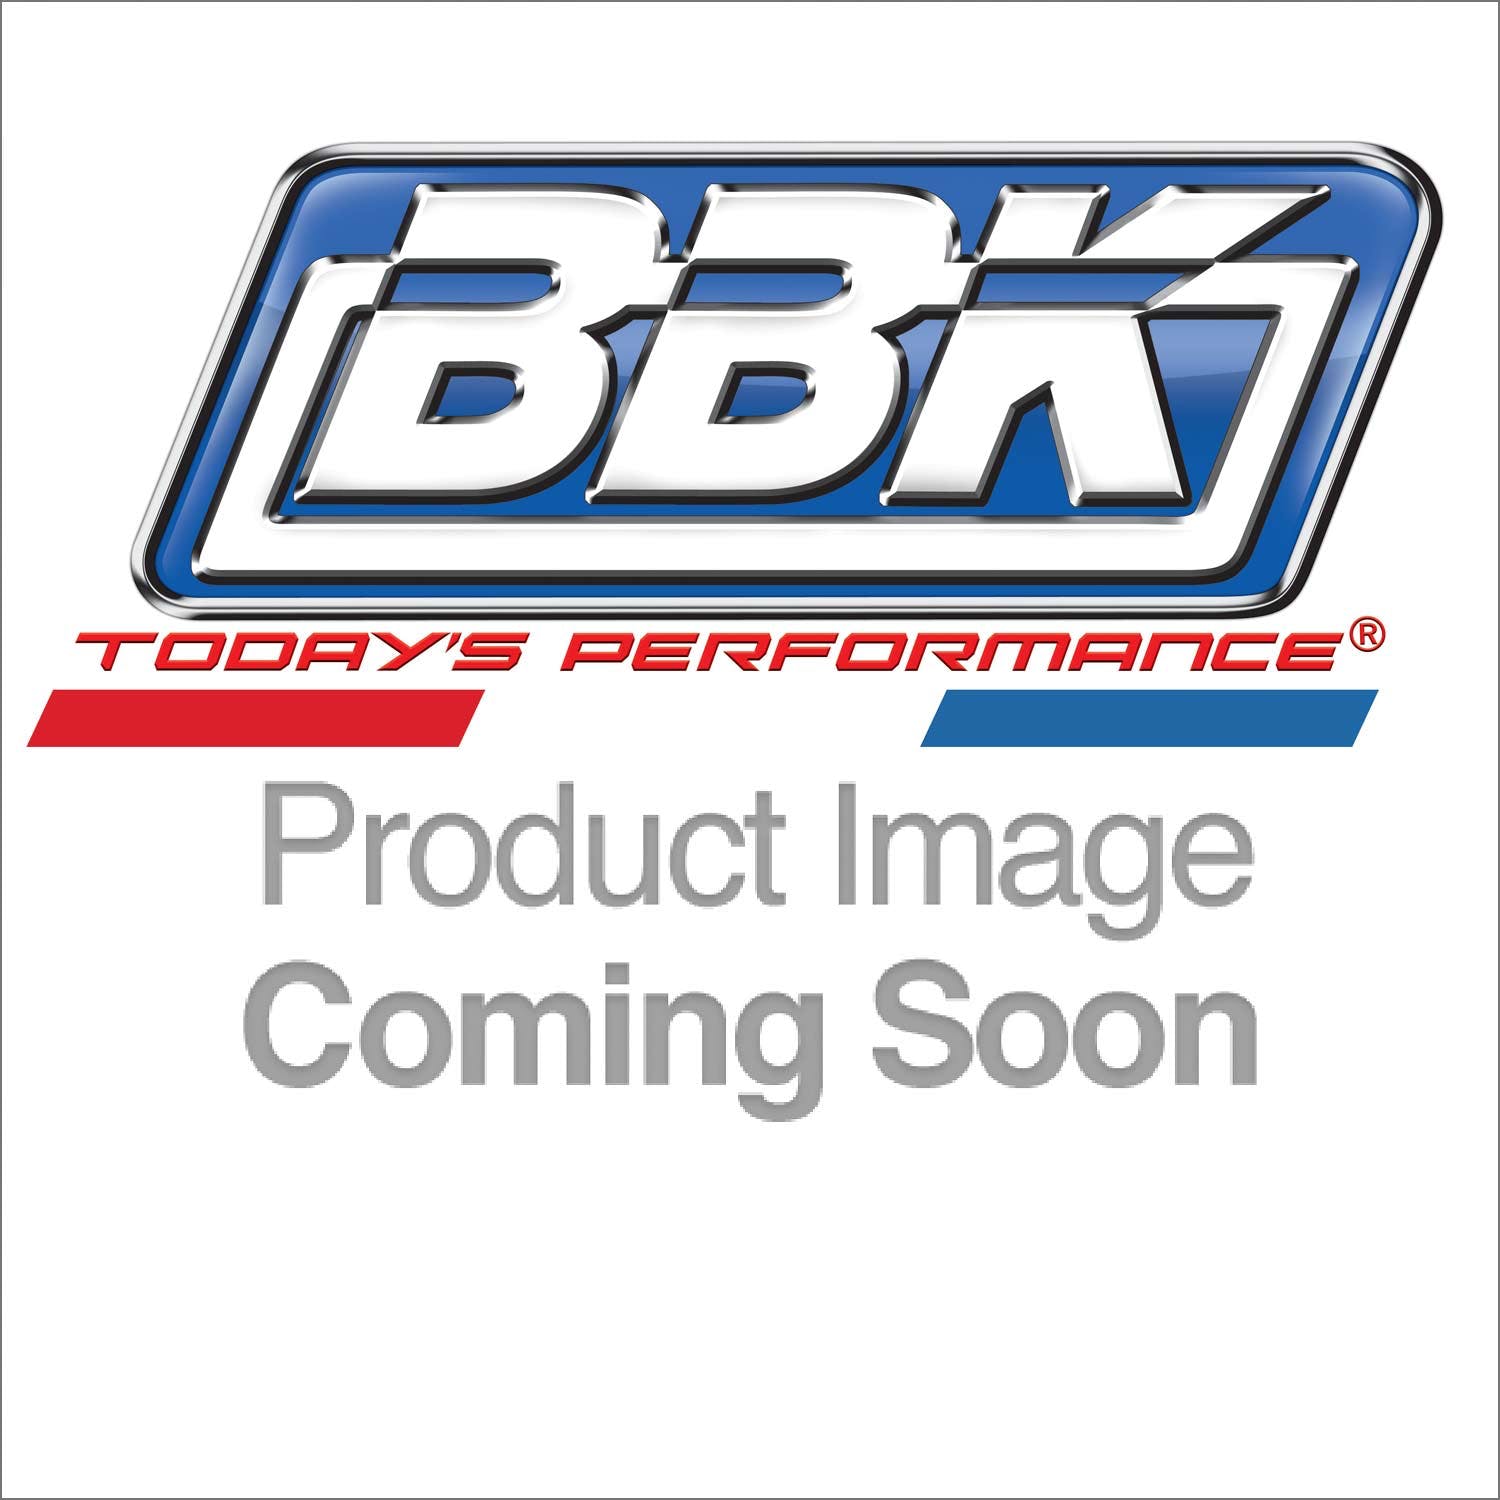 BBK Performance Parts 1413 Premium Header Gasket Set